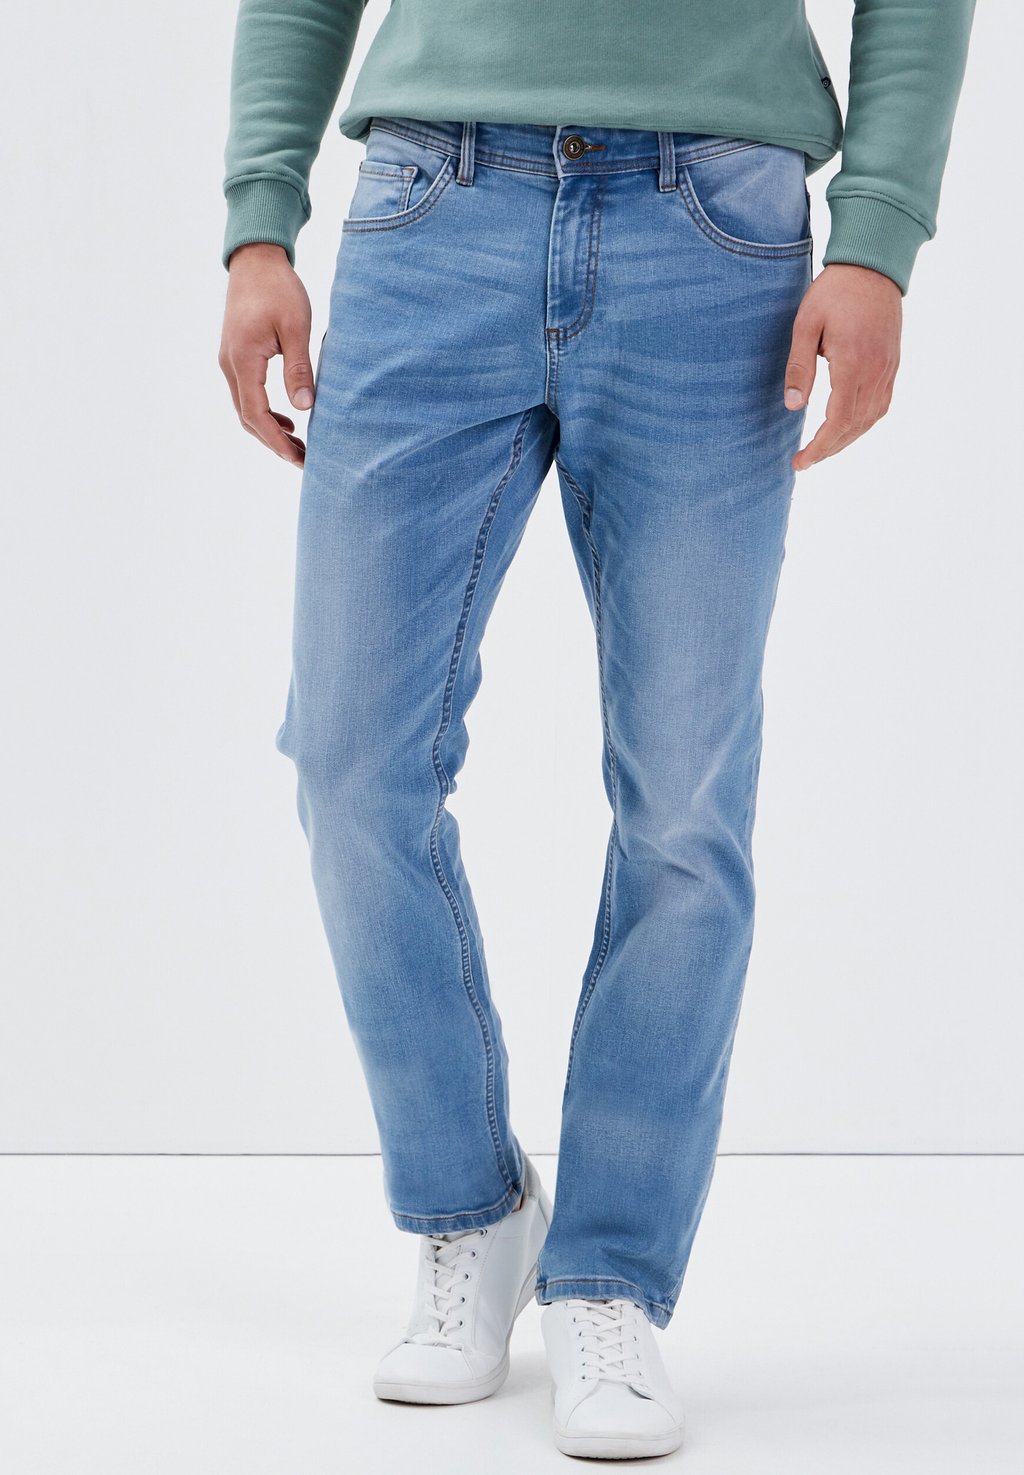 Джинсы-сигареты BONOBO Jeans, использованный деним